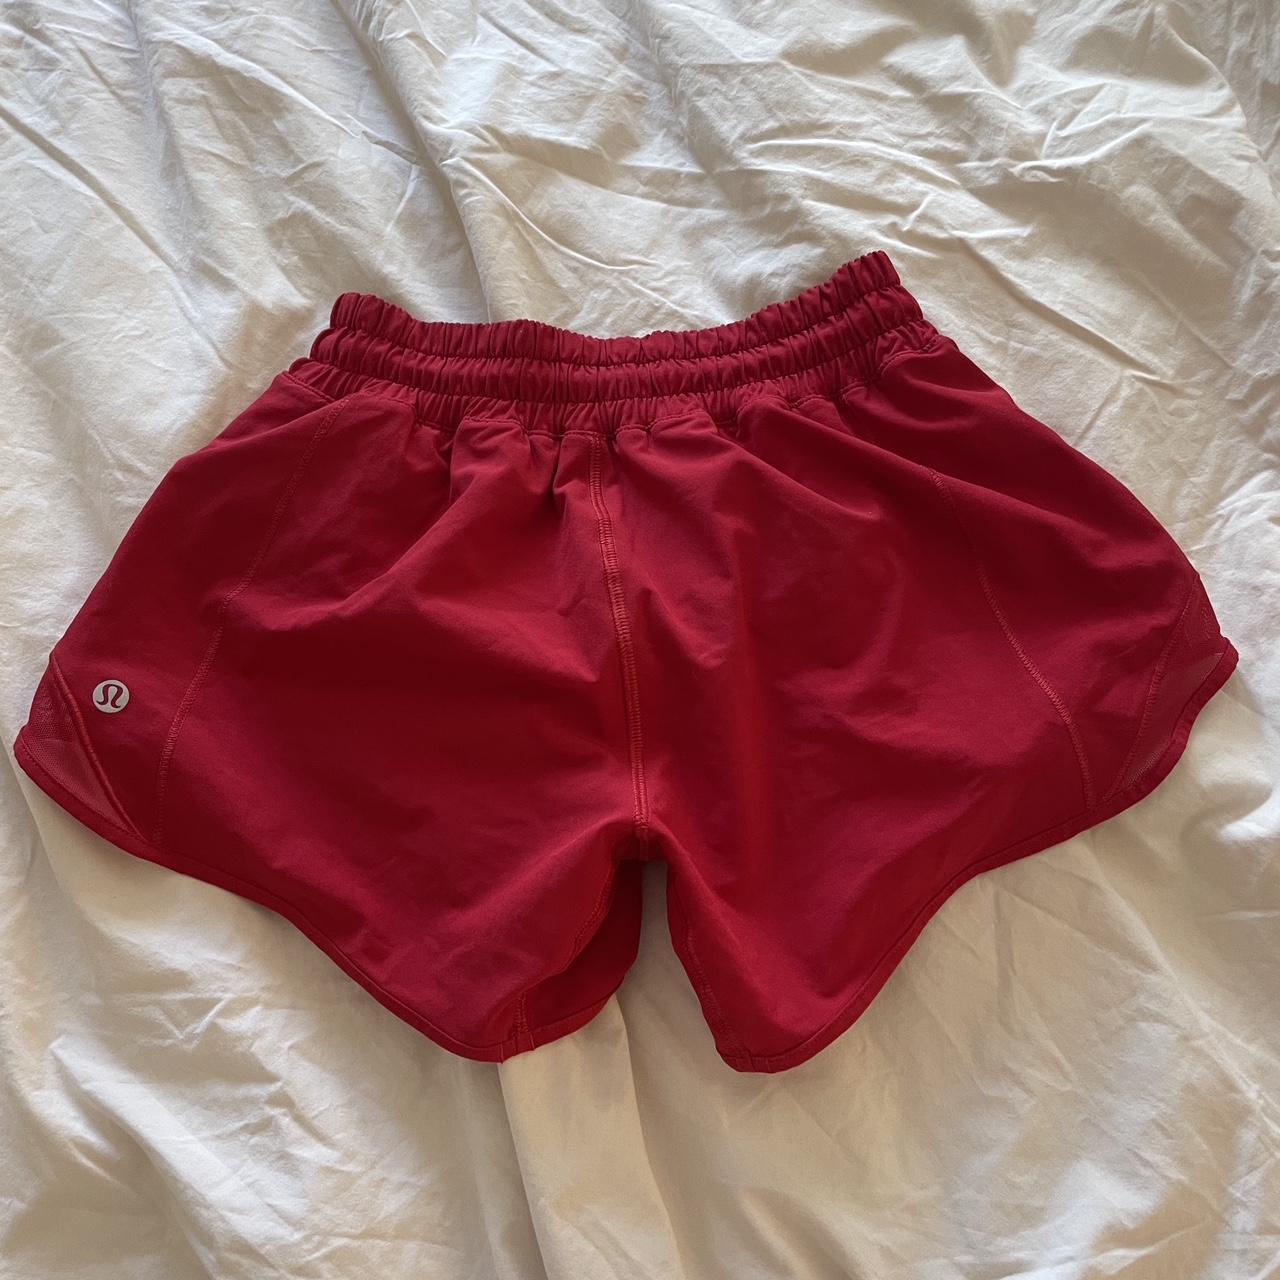 Lululemon shorts LOVE RED Track That HR Short 3” - Depop